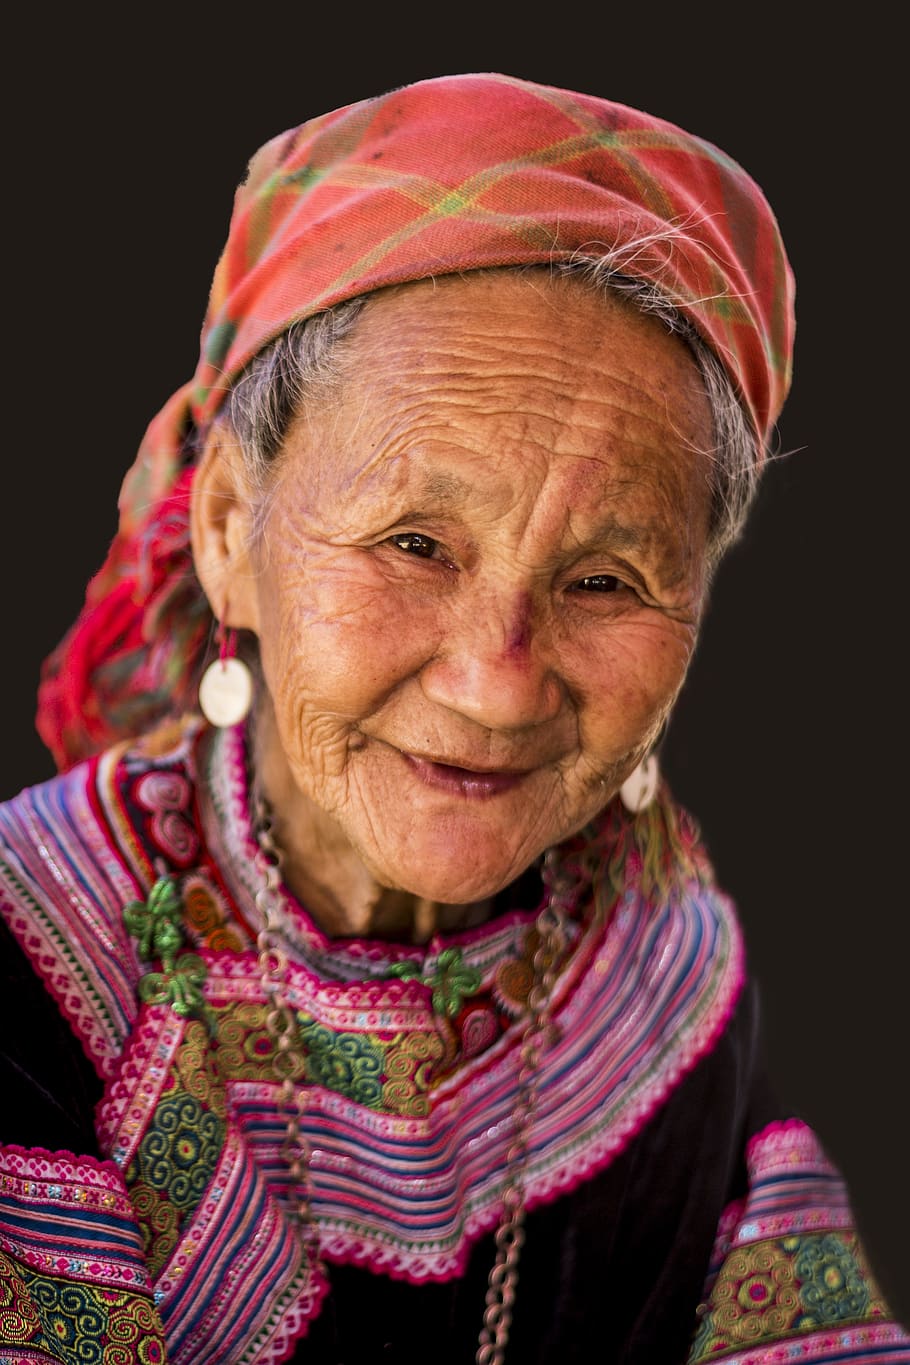 mujer, vietnam, tribu, asia, retrato, una persona, adulto, mirando a cámara, sonriendo, adulto mayor